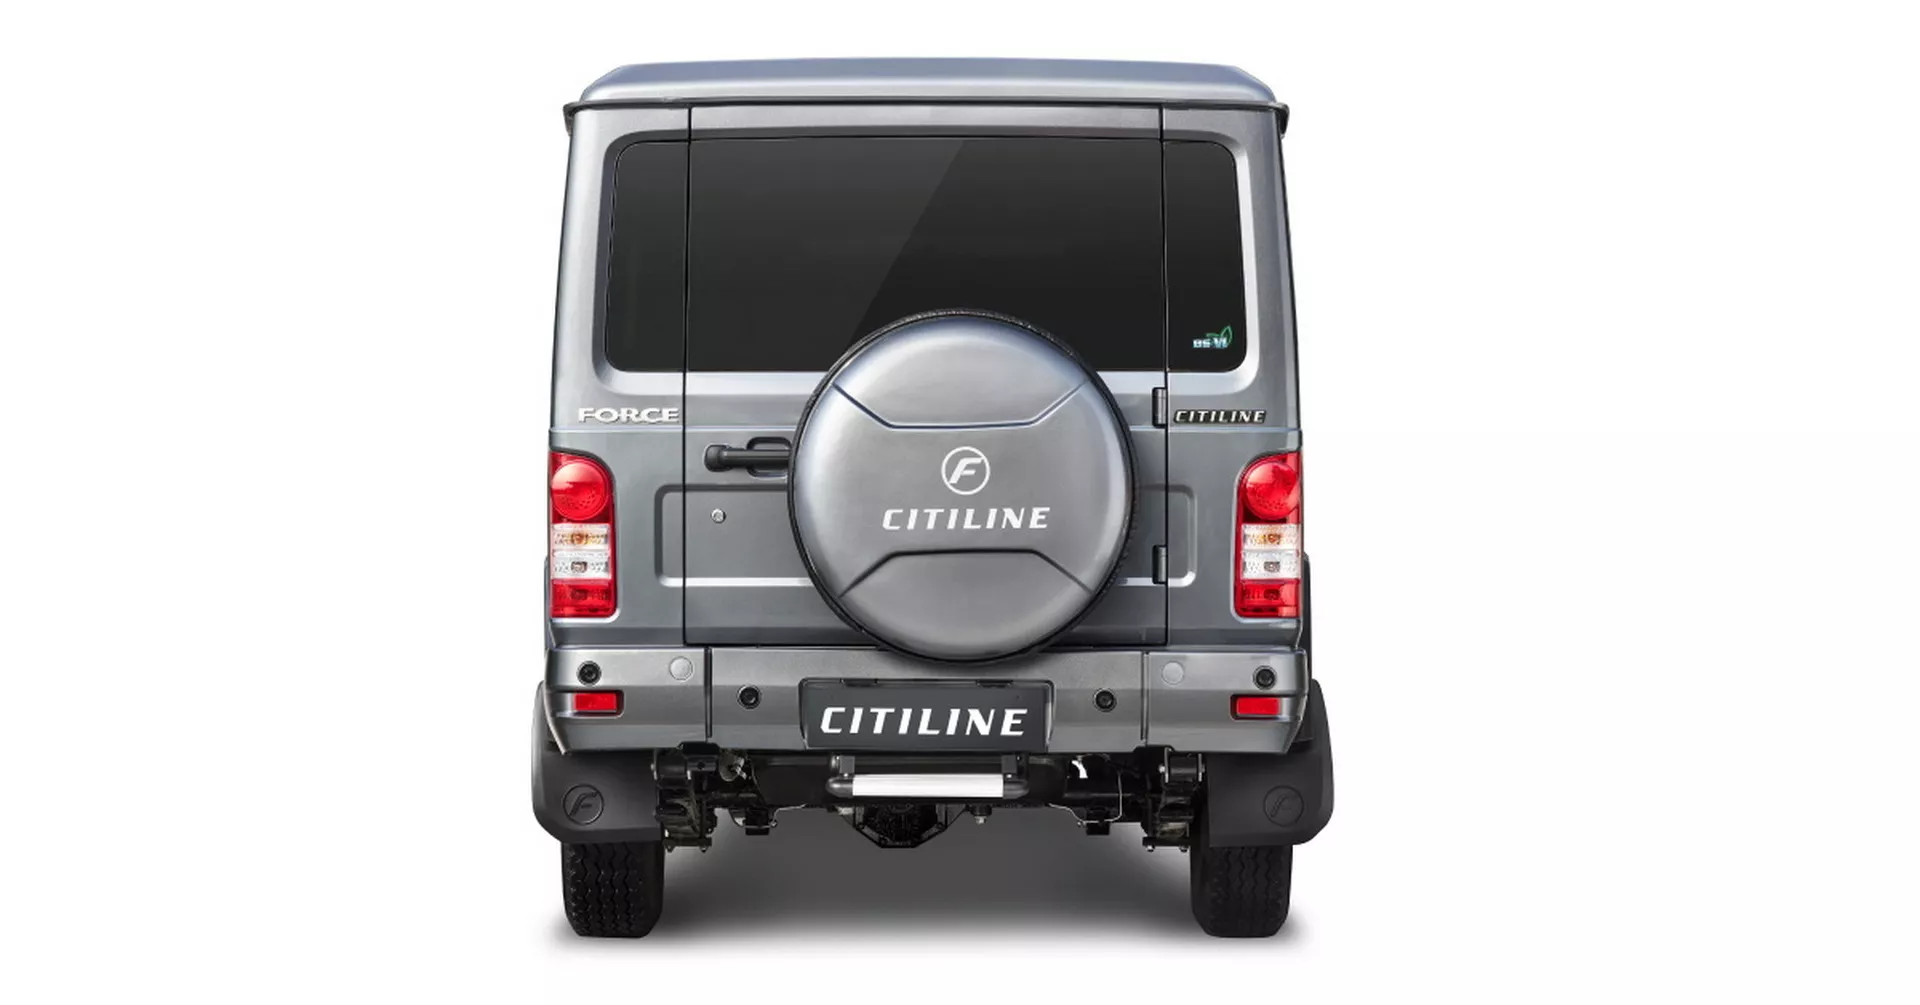 انطلاق SUV هندية عملاقة بـ 10 مقاعد وتصميم مستوحى من سيارات جي كلاس القديمة 8